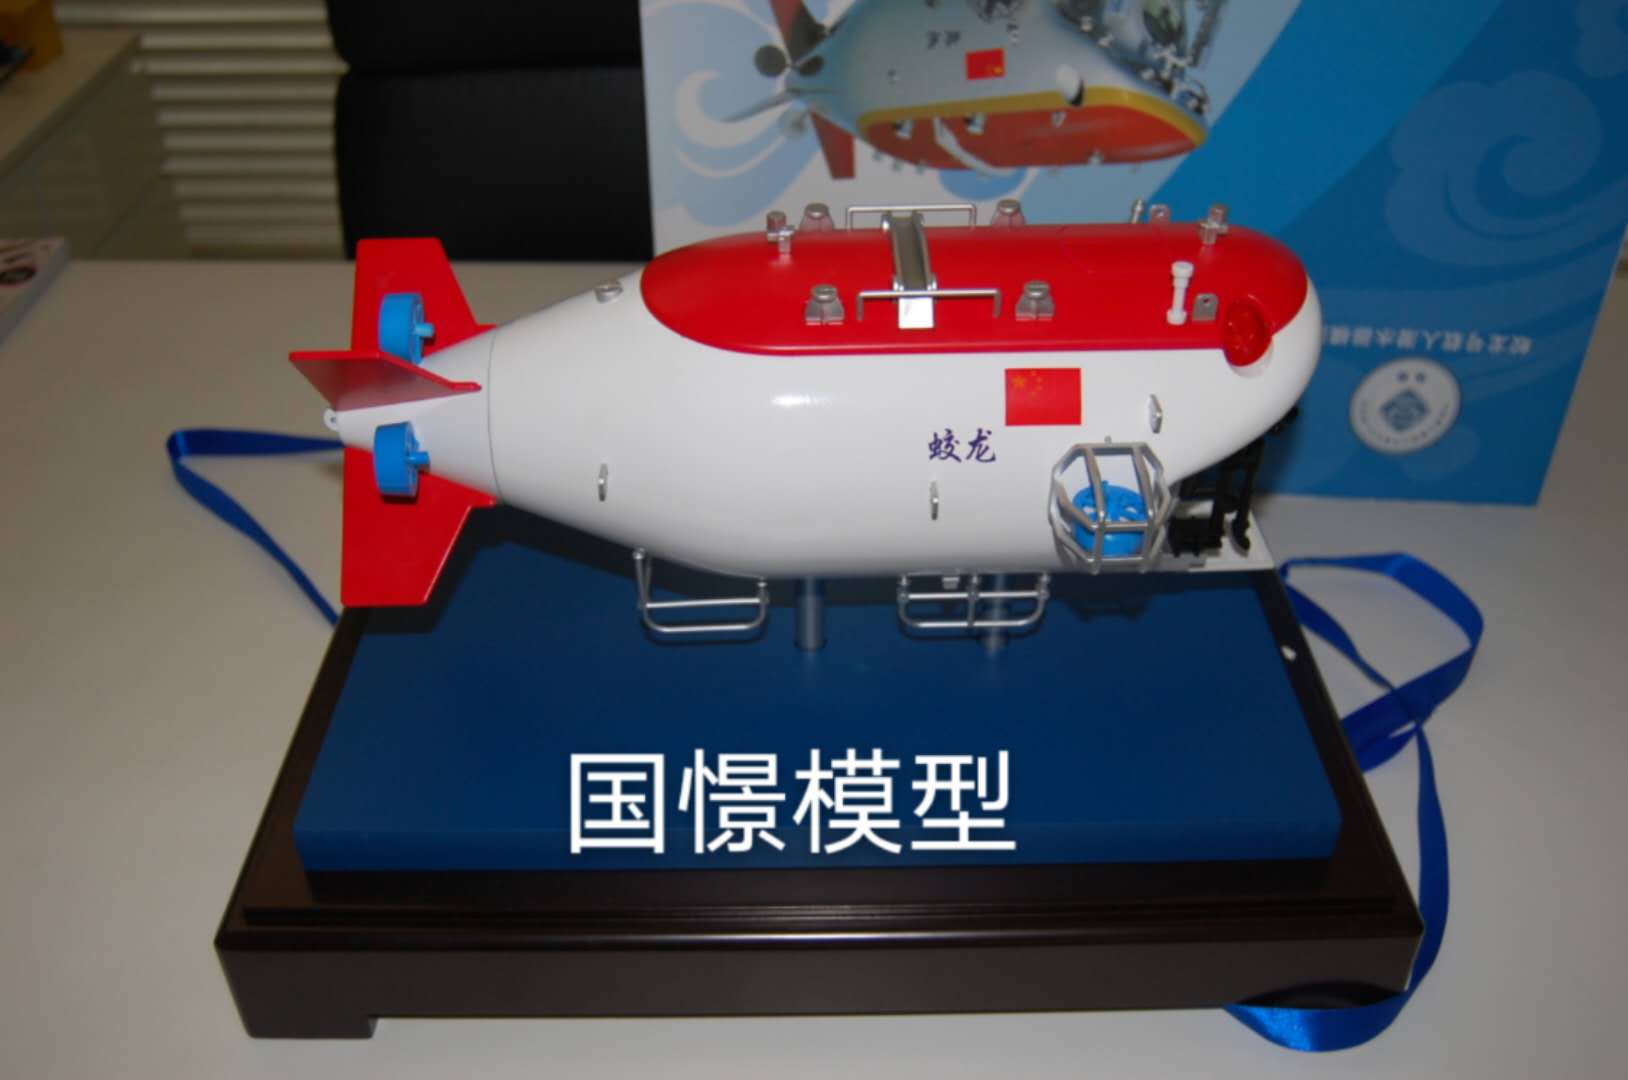 龙陵县船舶模型